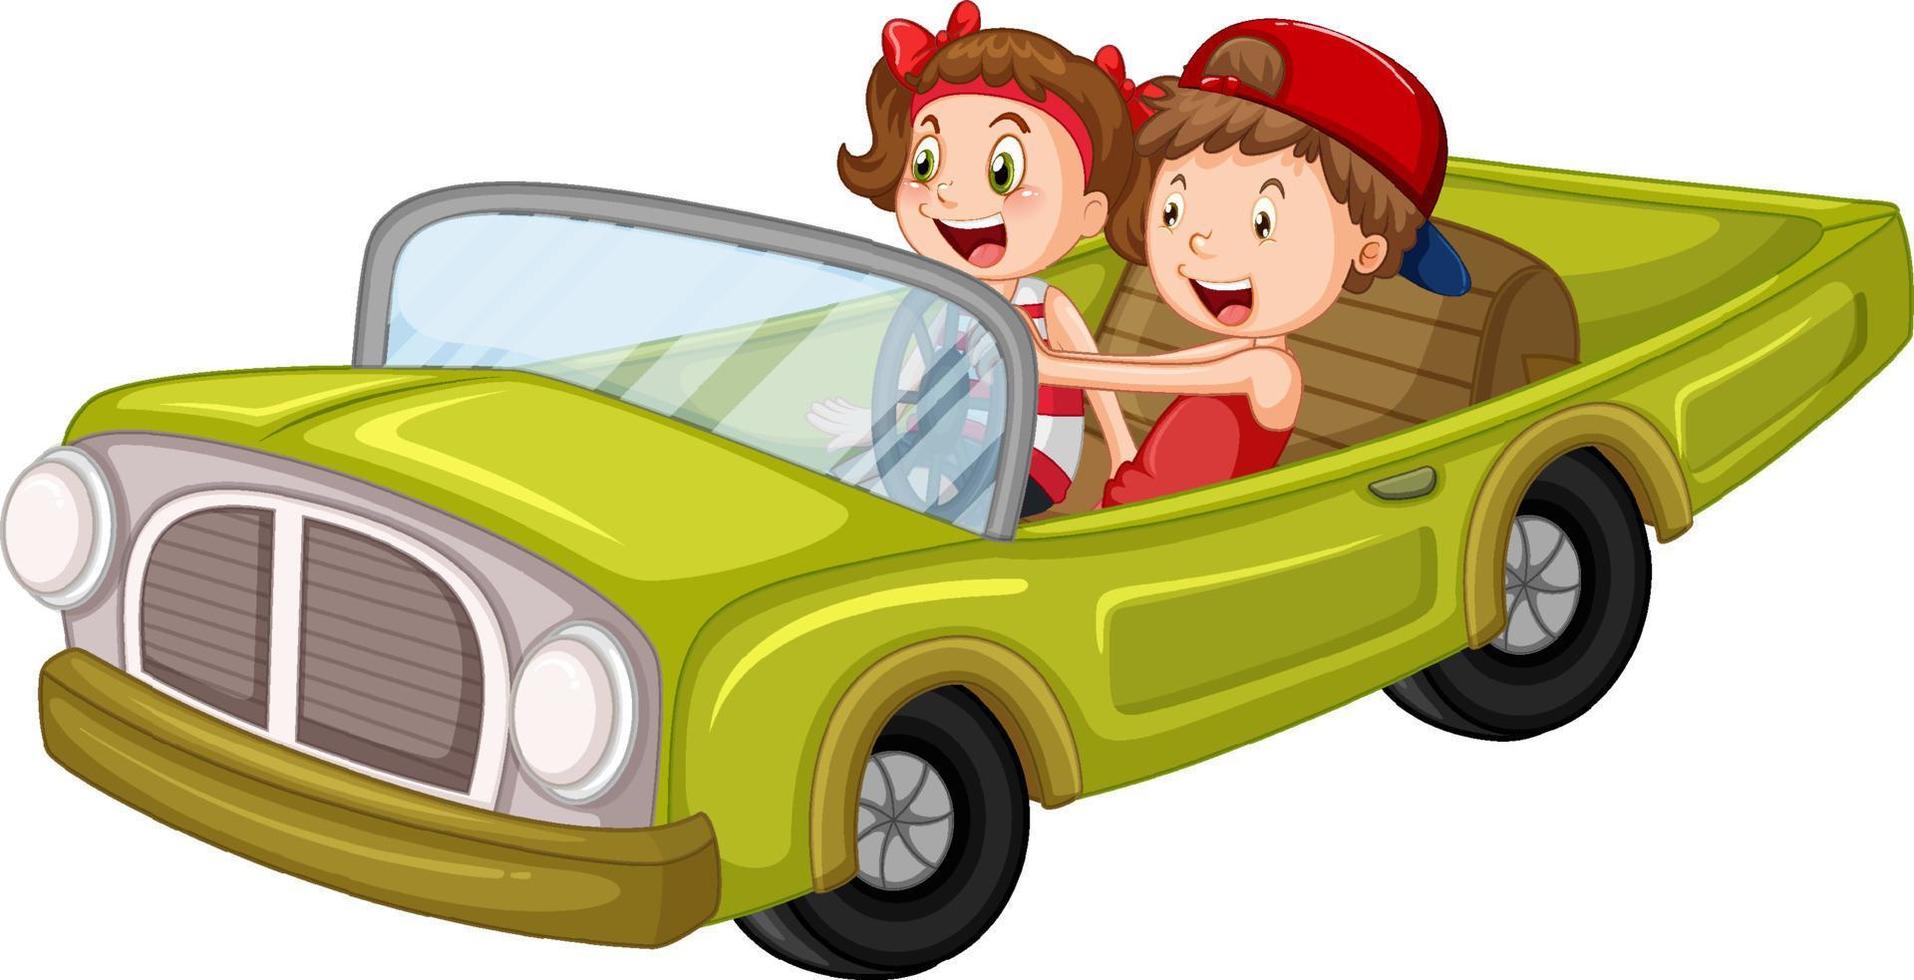 crianças em carros antigos em design de desenho animado vetor